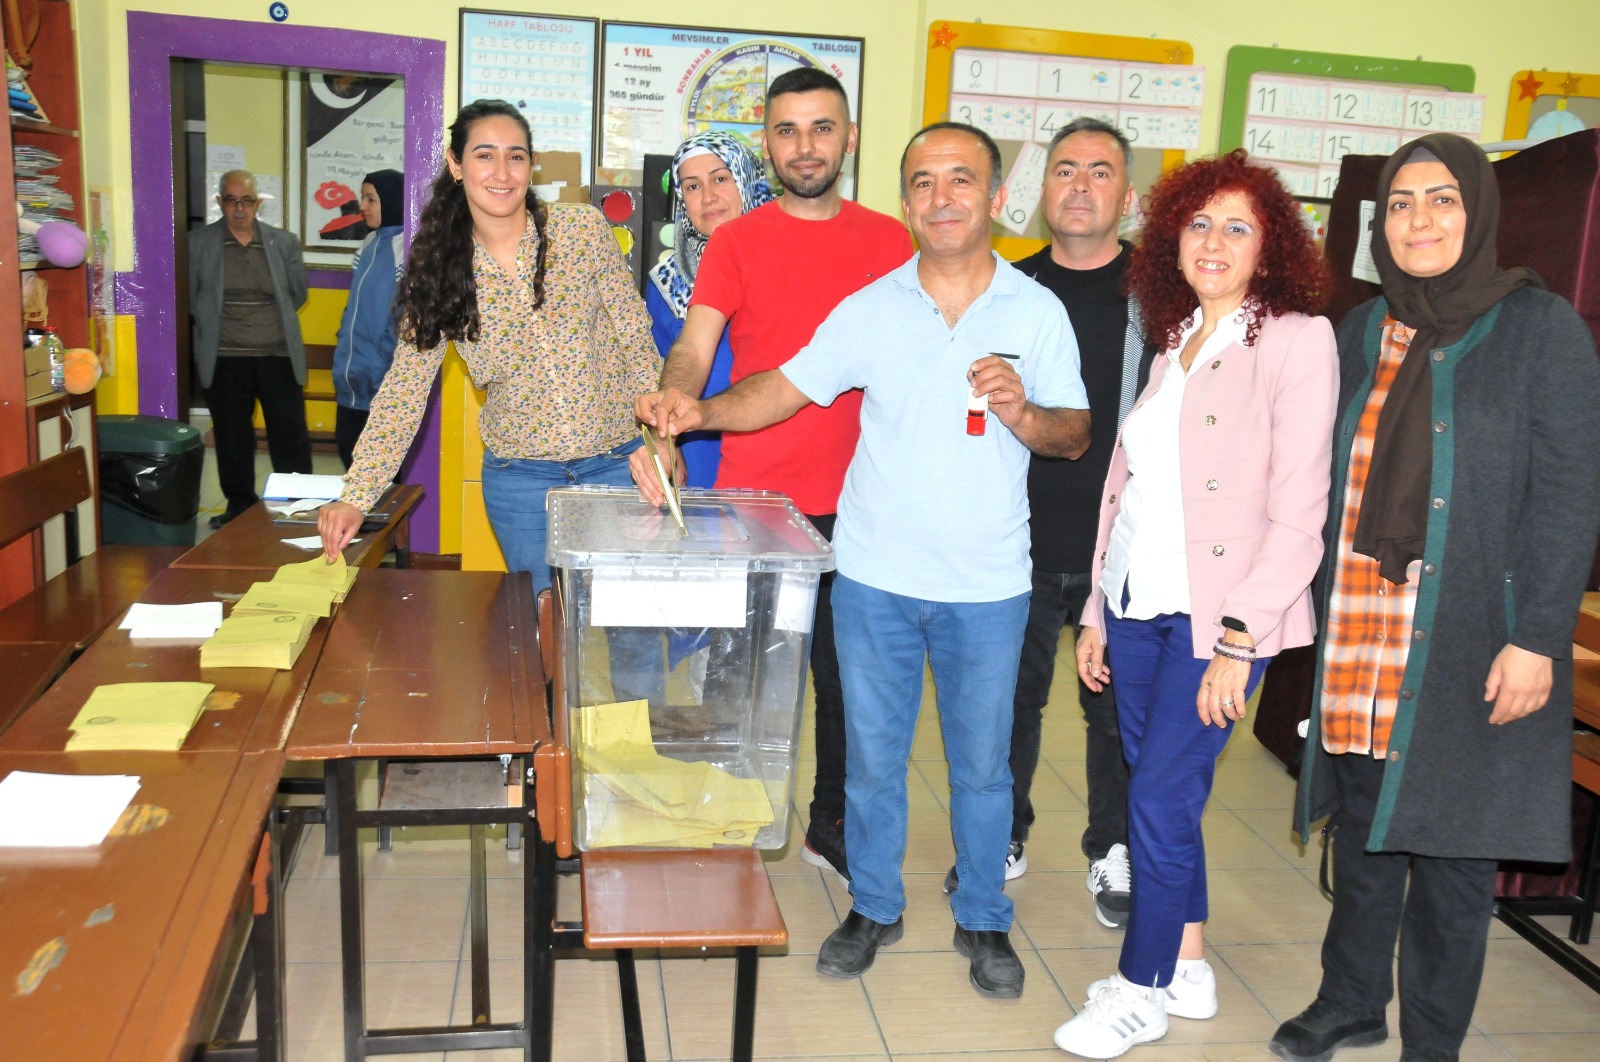 14 Mayıs 2023 Cumhurbaşkanlığı seçimlerinde Cumhur İttifakı adayı Recep Tayyip Erdoğan’ın 49,52, Millet İttifakı adayı Kemal Kılıçdaroğlu'nun oy oranı yüzde 44,88 oy alması ve adayların yüzde 50’yi geçememesi nedeniyle ikinci tura kalan seçimlerde Manisalılar yeniden sandık başına gitti.